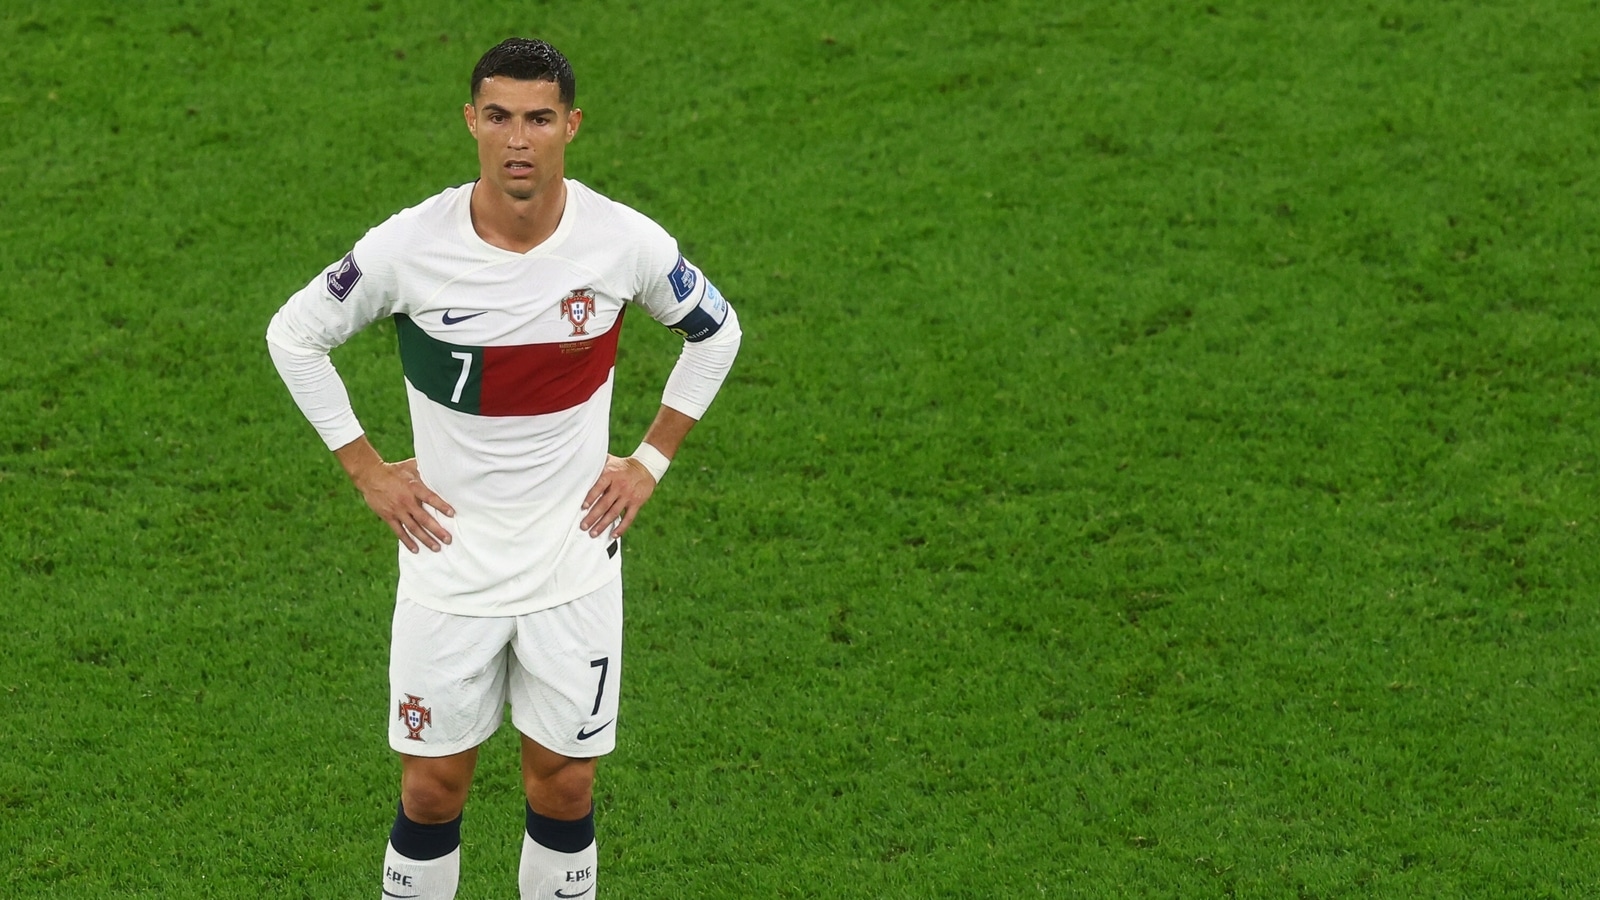 Copa do Mundo da FIFA apaga tuíte com Ronaldo após alegações de ‘desrespeito’ |  notícias de futebol